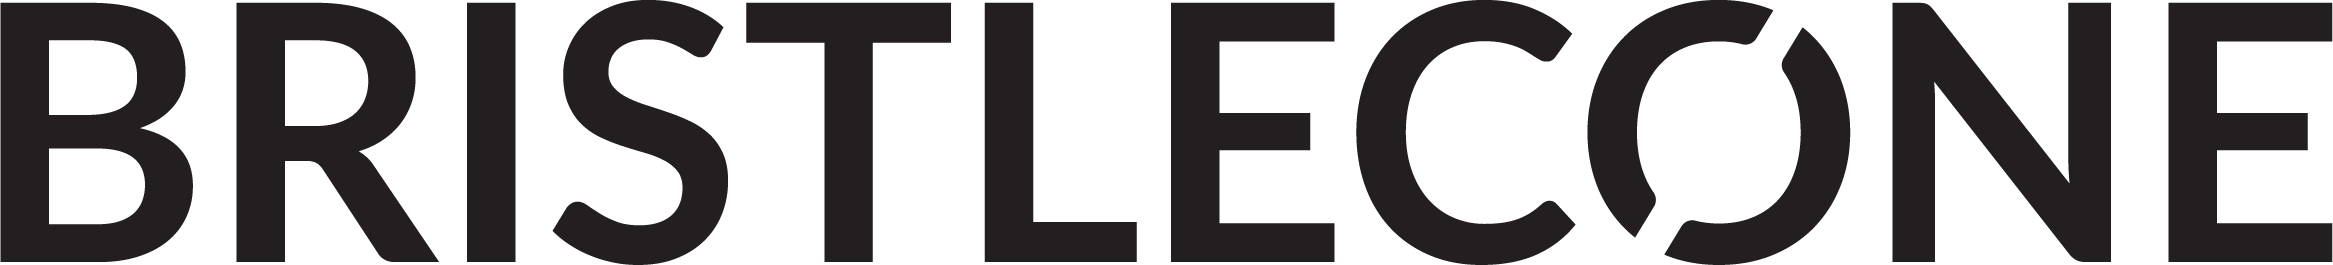 Bristlecone_Logo_Black